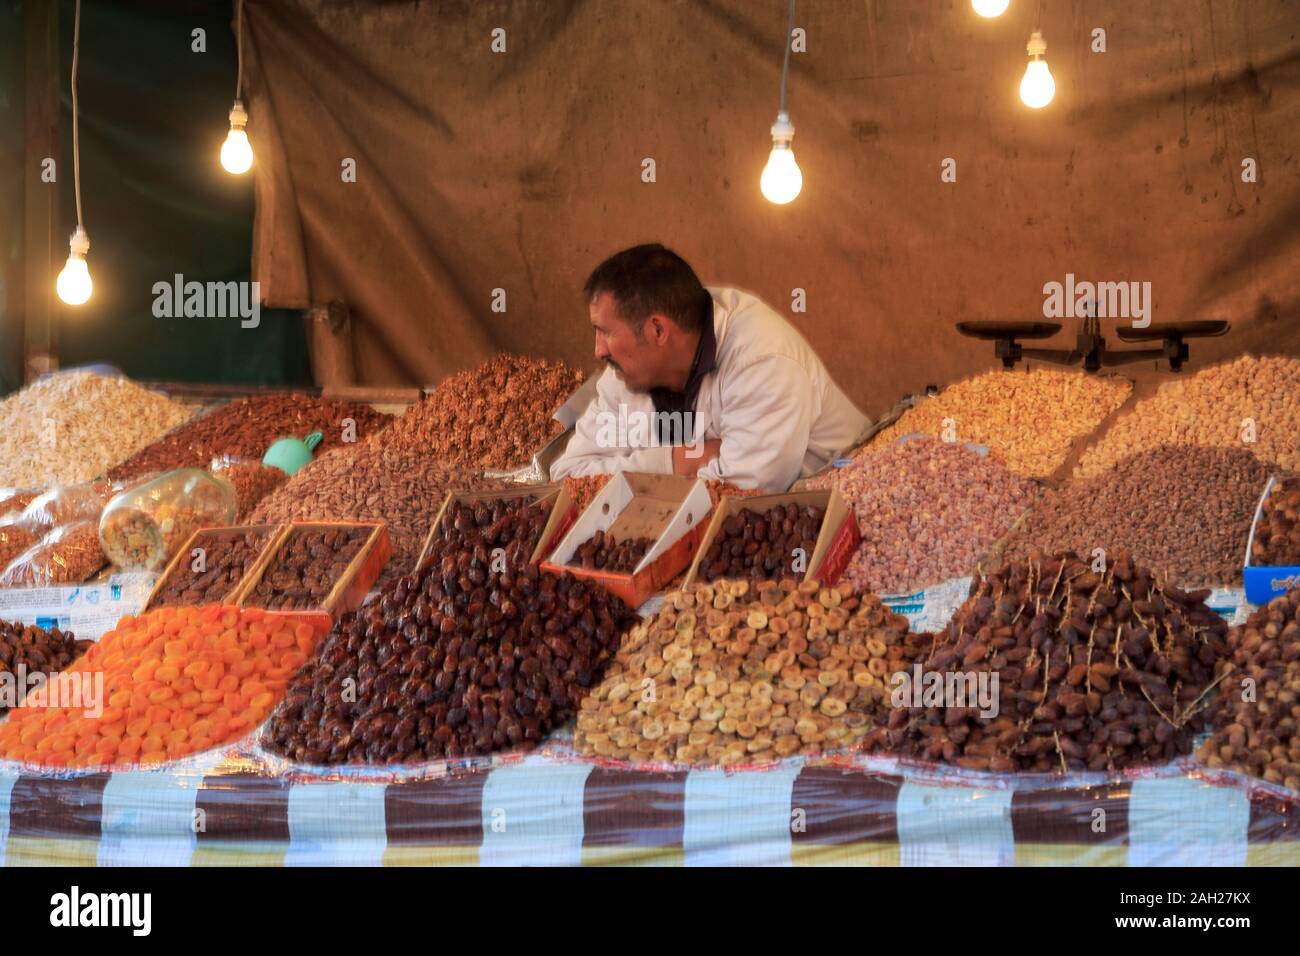 Étal de fruits séchés, de la place Jemaa el Fna (Djemaa Fnaa place Djema), UNESCO World Heritage Site, Marrakech, Marrakech, Maroc, Afrique du Nord Banque D'Images